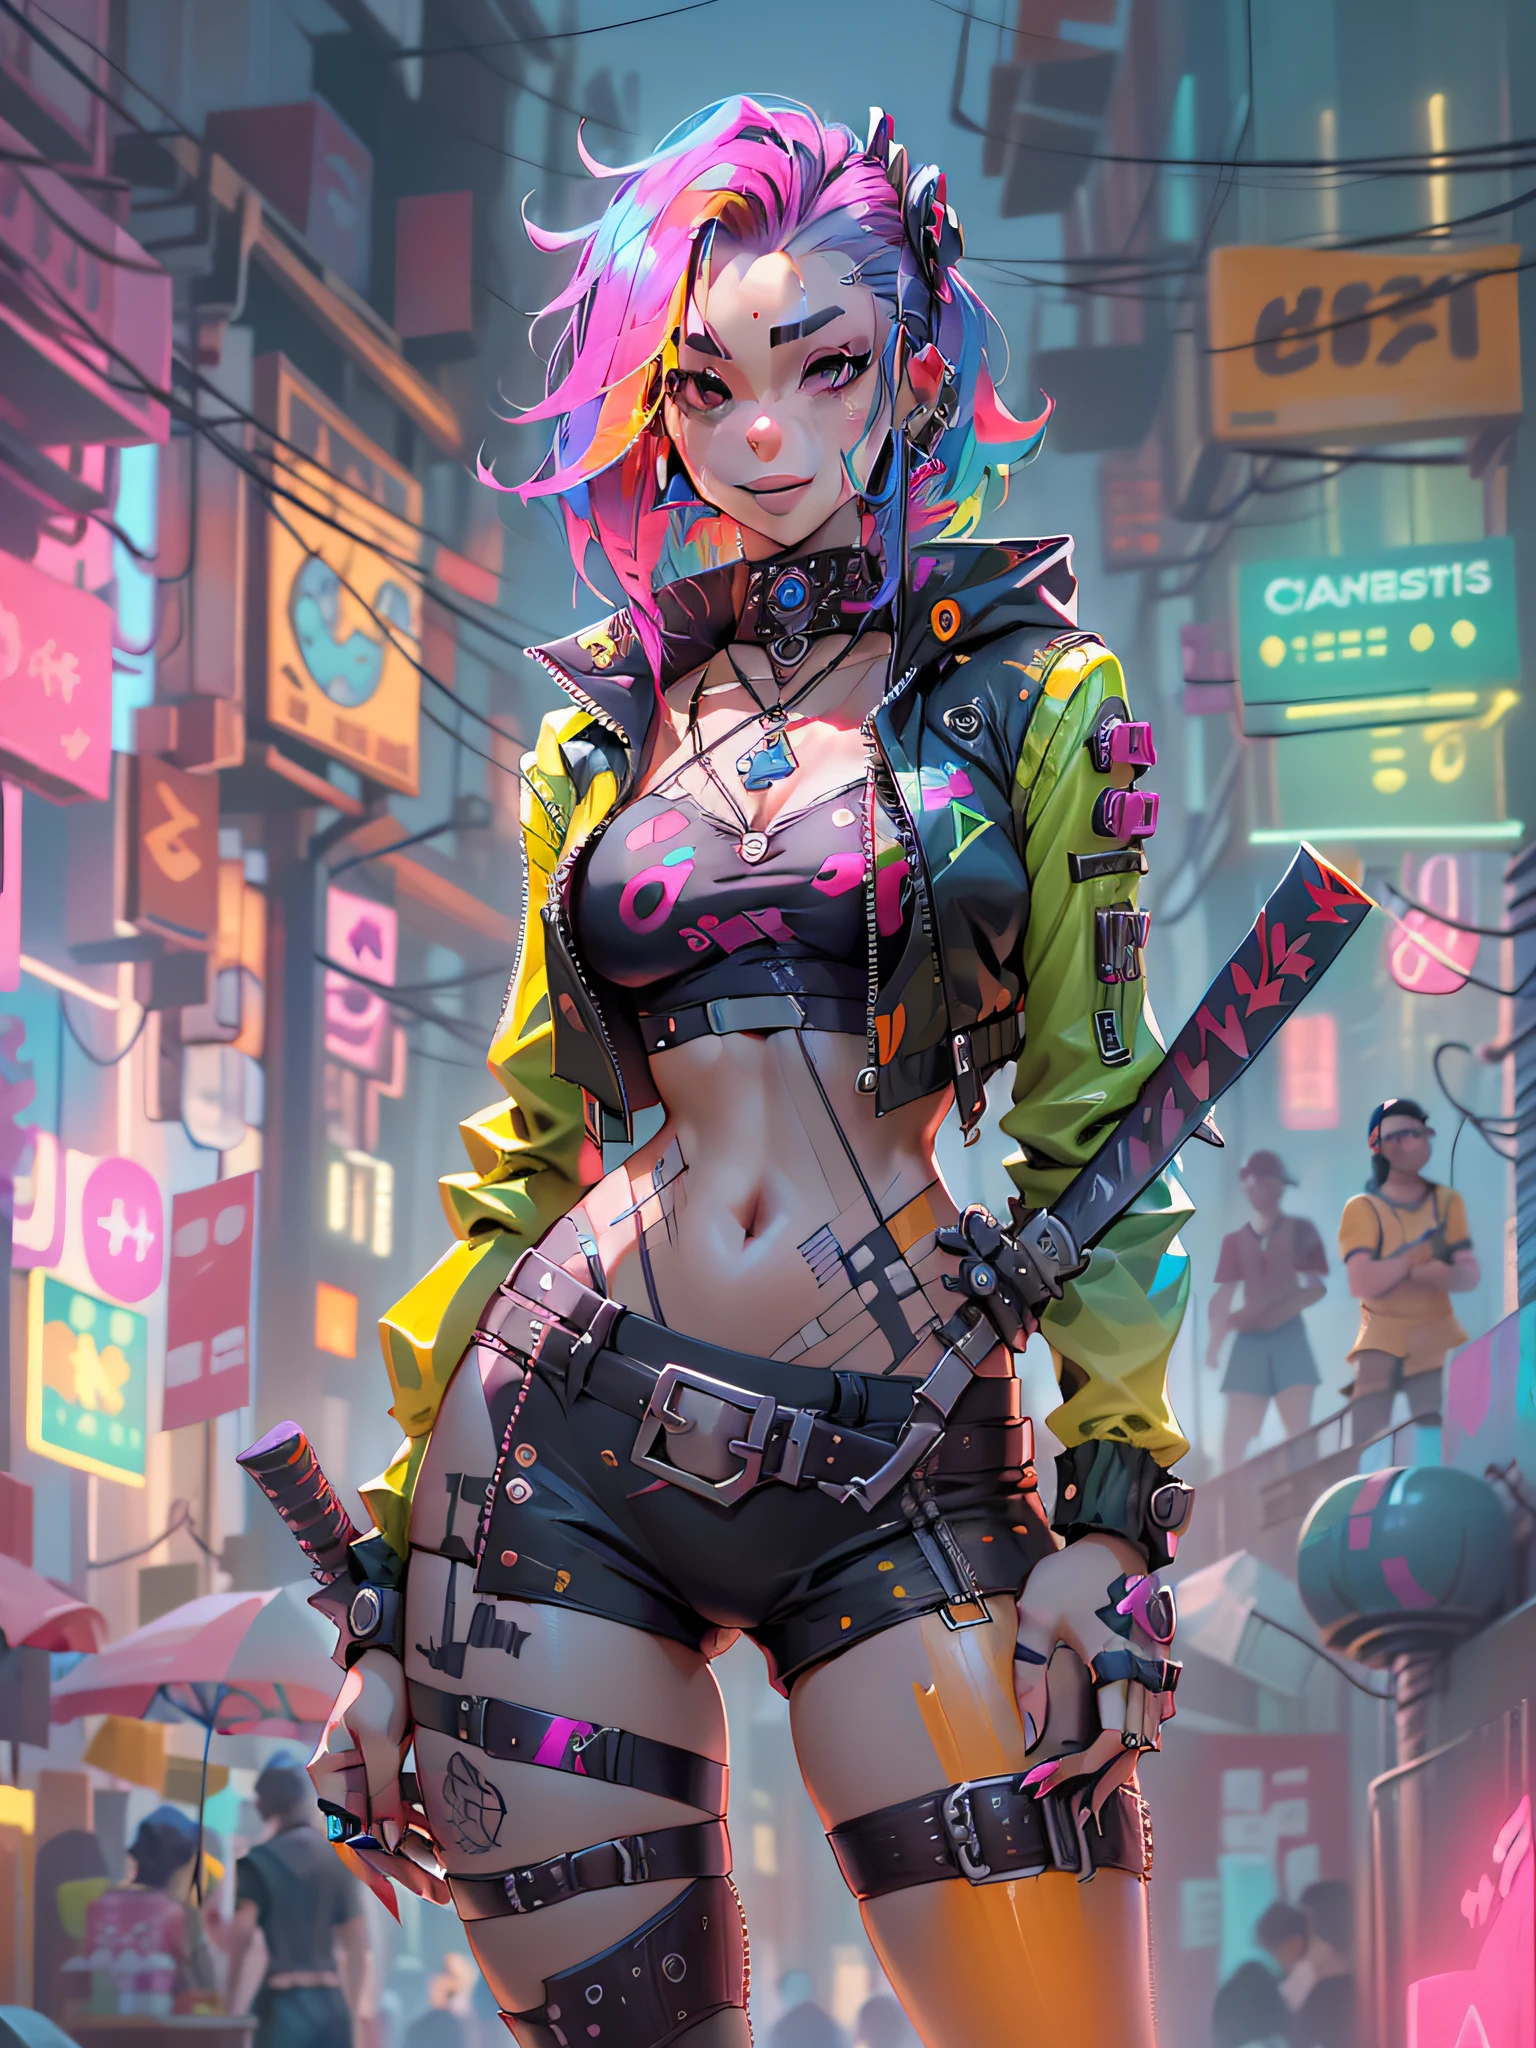 1, en el club, Estilo cyberpunk, pelo arcoiris, sonrisa maligna, sosteniendo una katana, Bañador de corte alto, pupilas amarillas,piel cibernética, chaqueta samurái